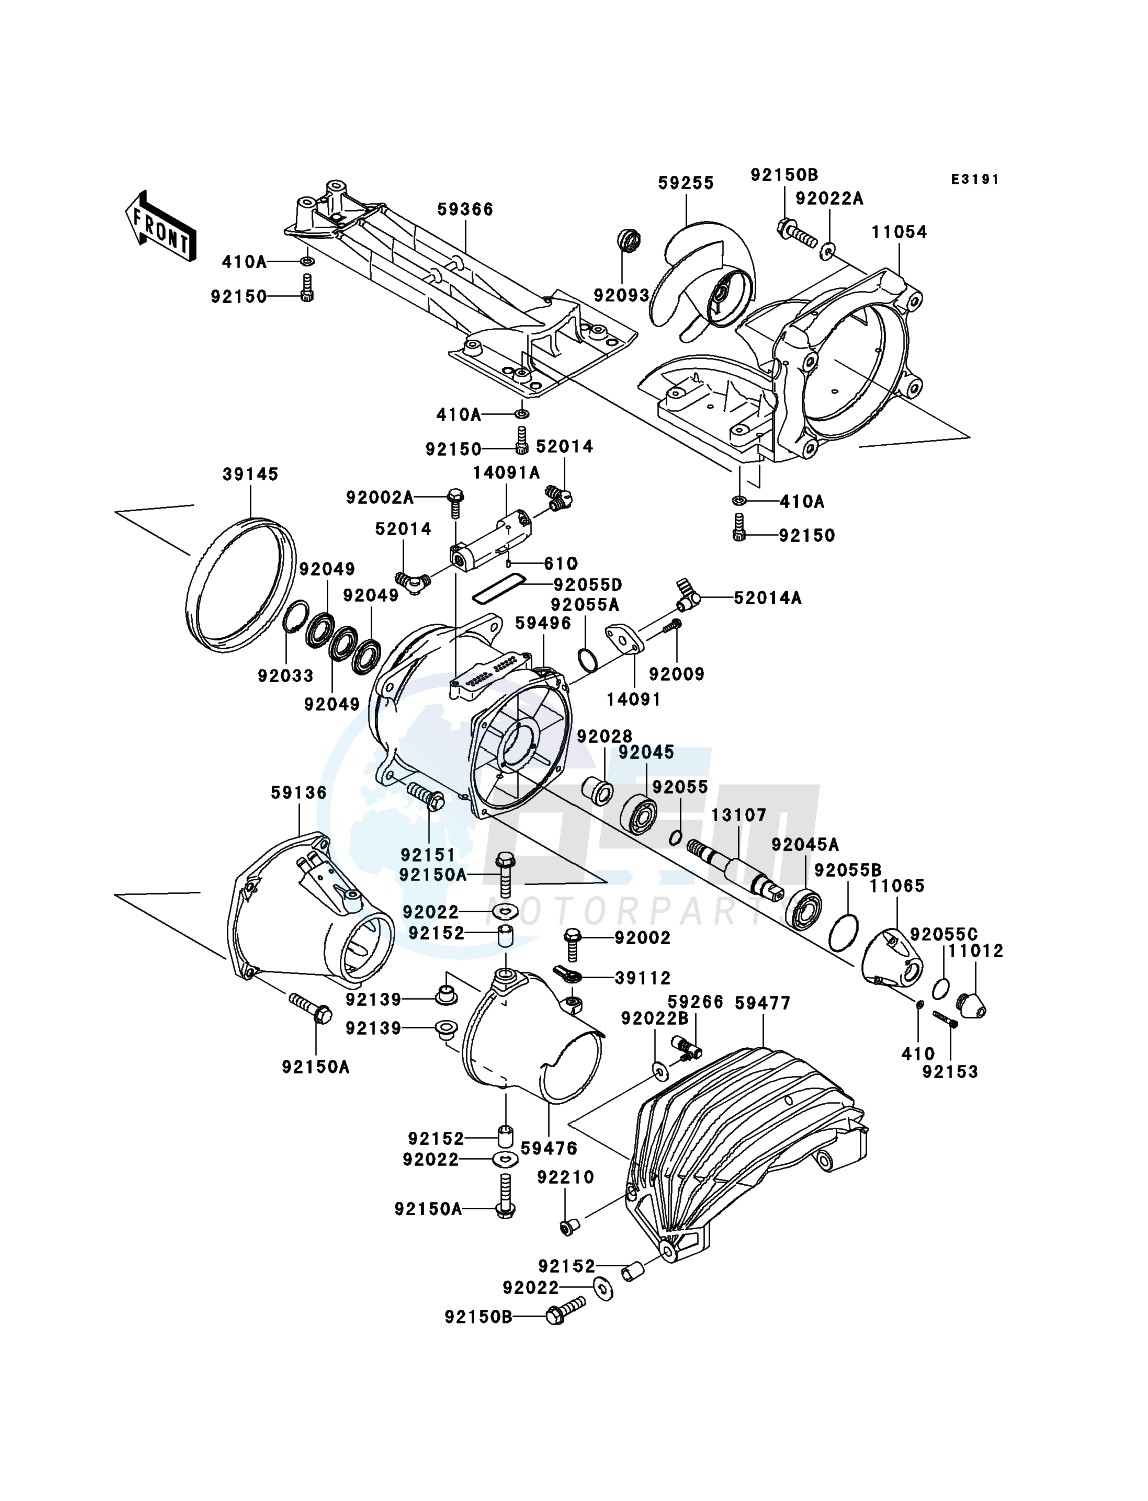 Jet Pump blueprint